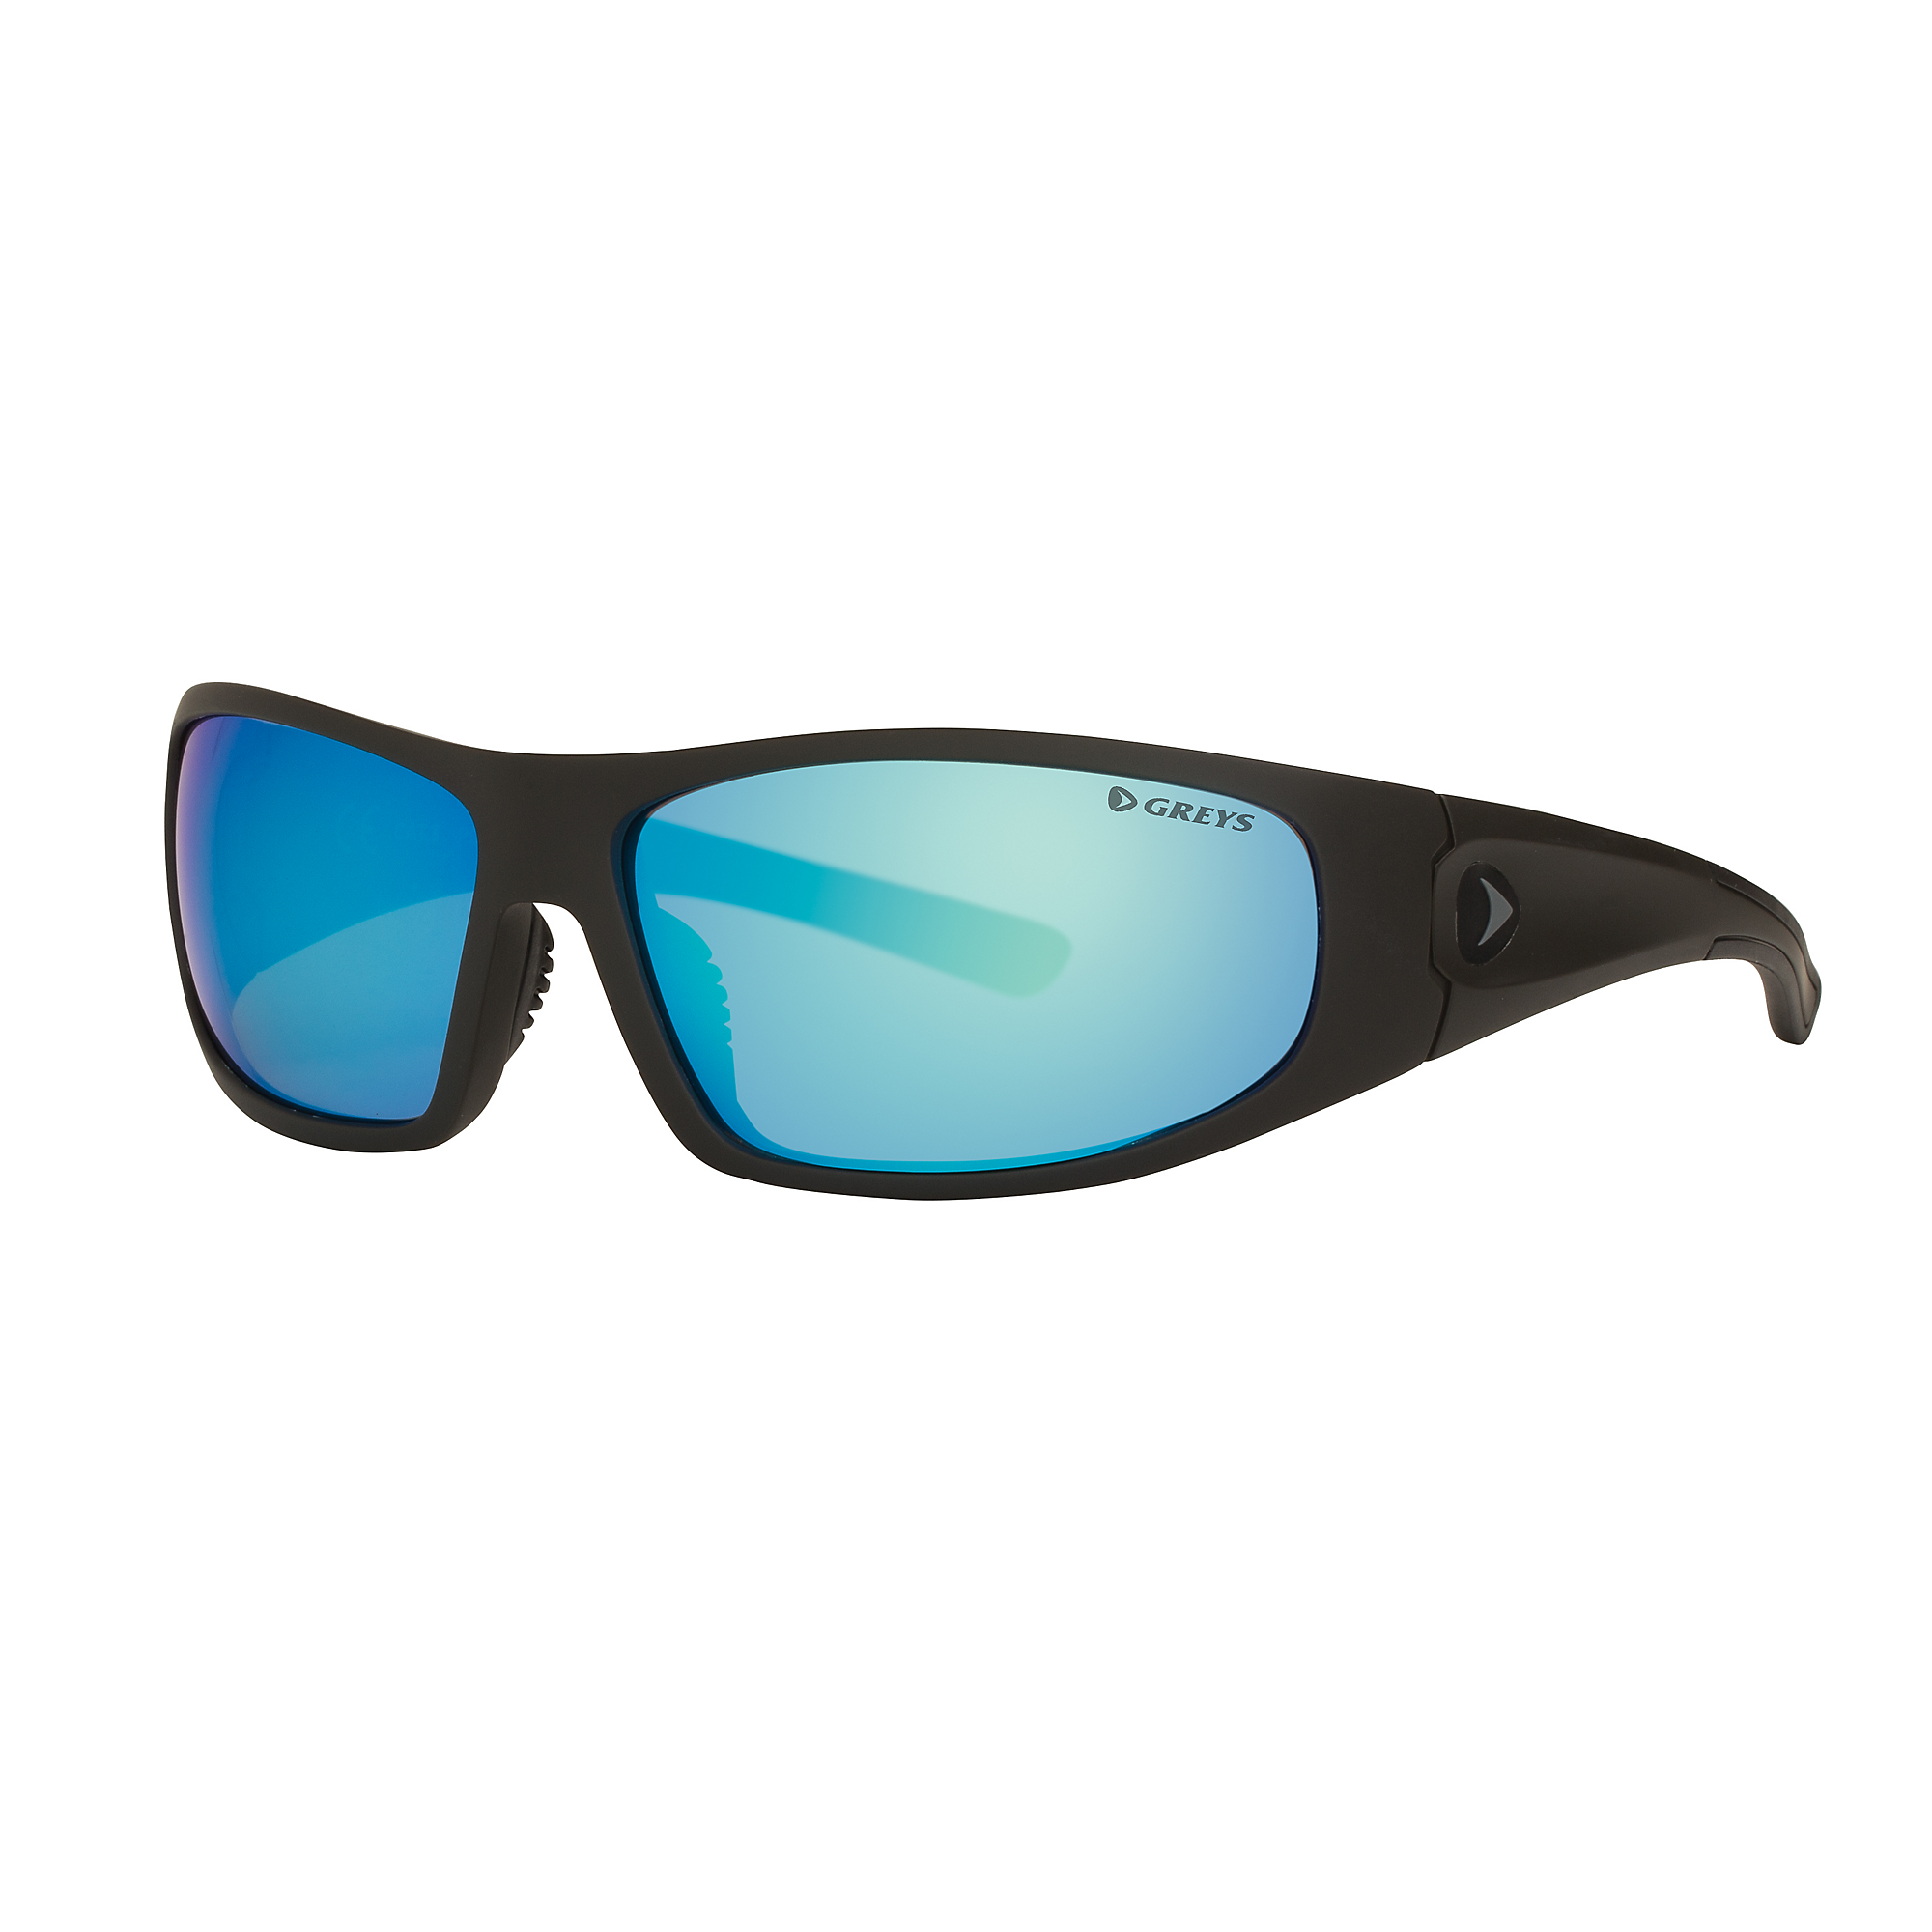 Greys G1 Sunglasses  (Matt Carbon/Blue Mirror) 1443834.jpg